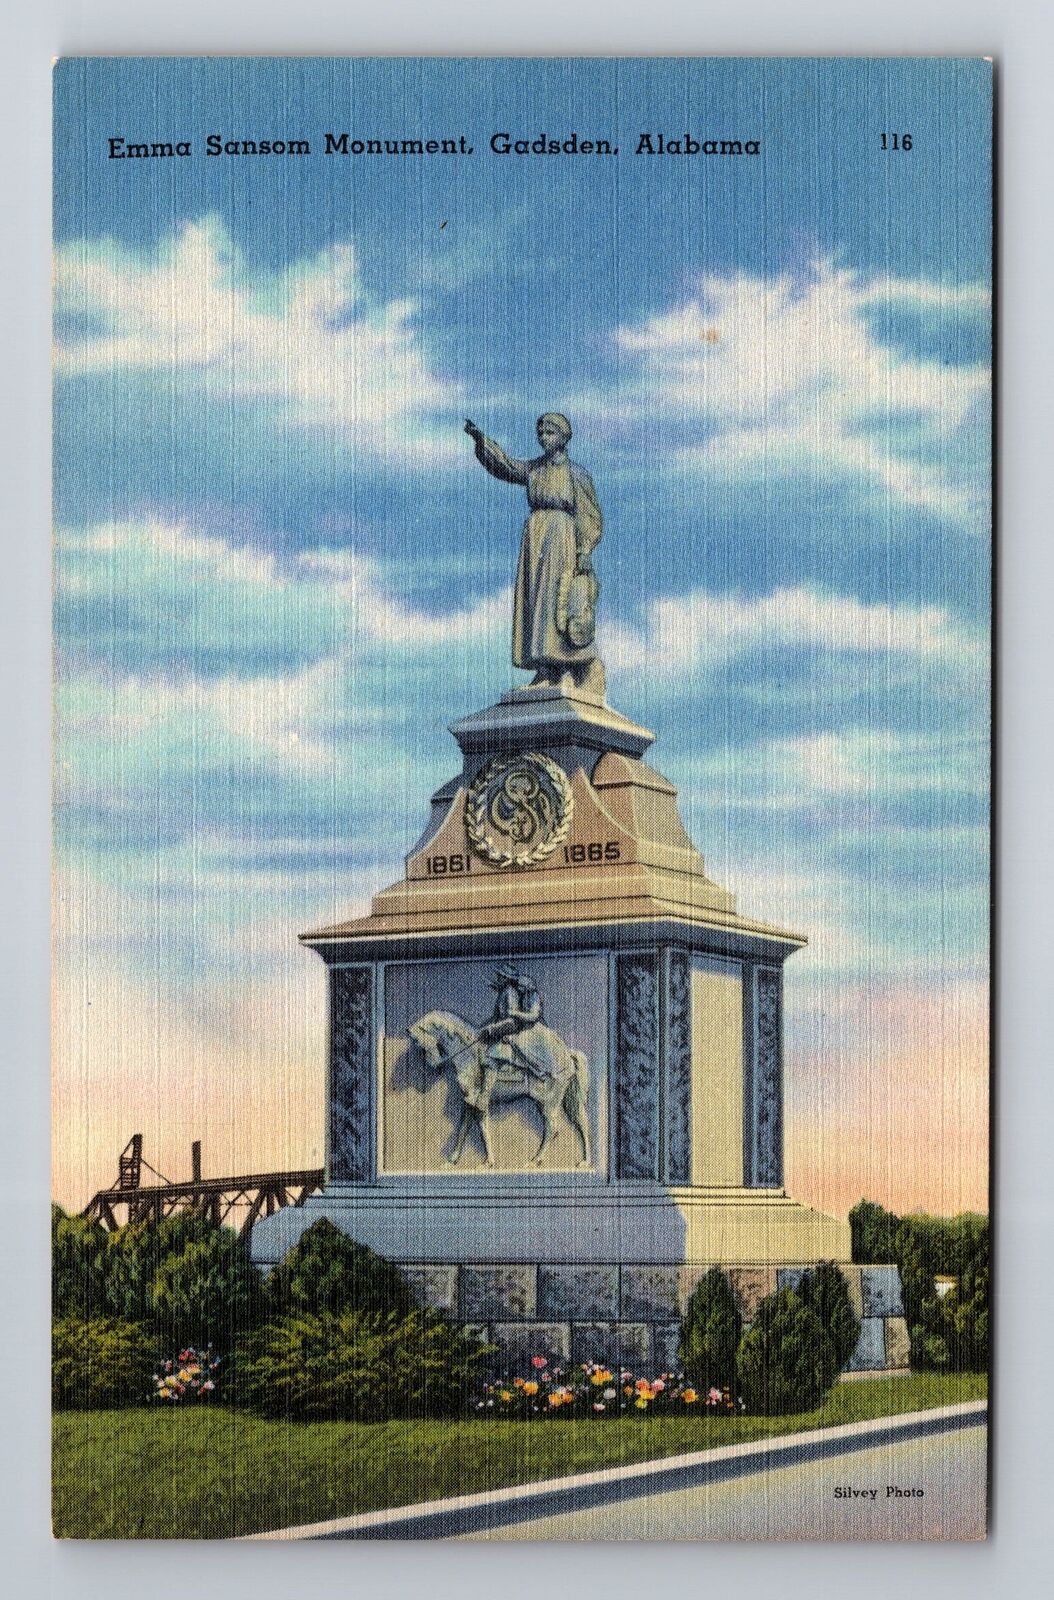 Gadsden AL-Alabama, Emma Sansom Monument, Antique, Vintage Postcard